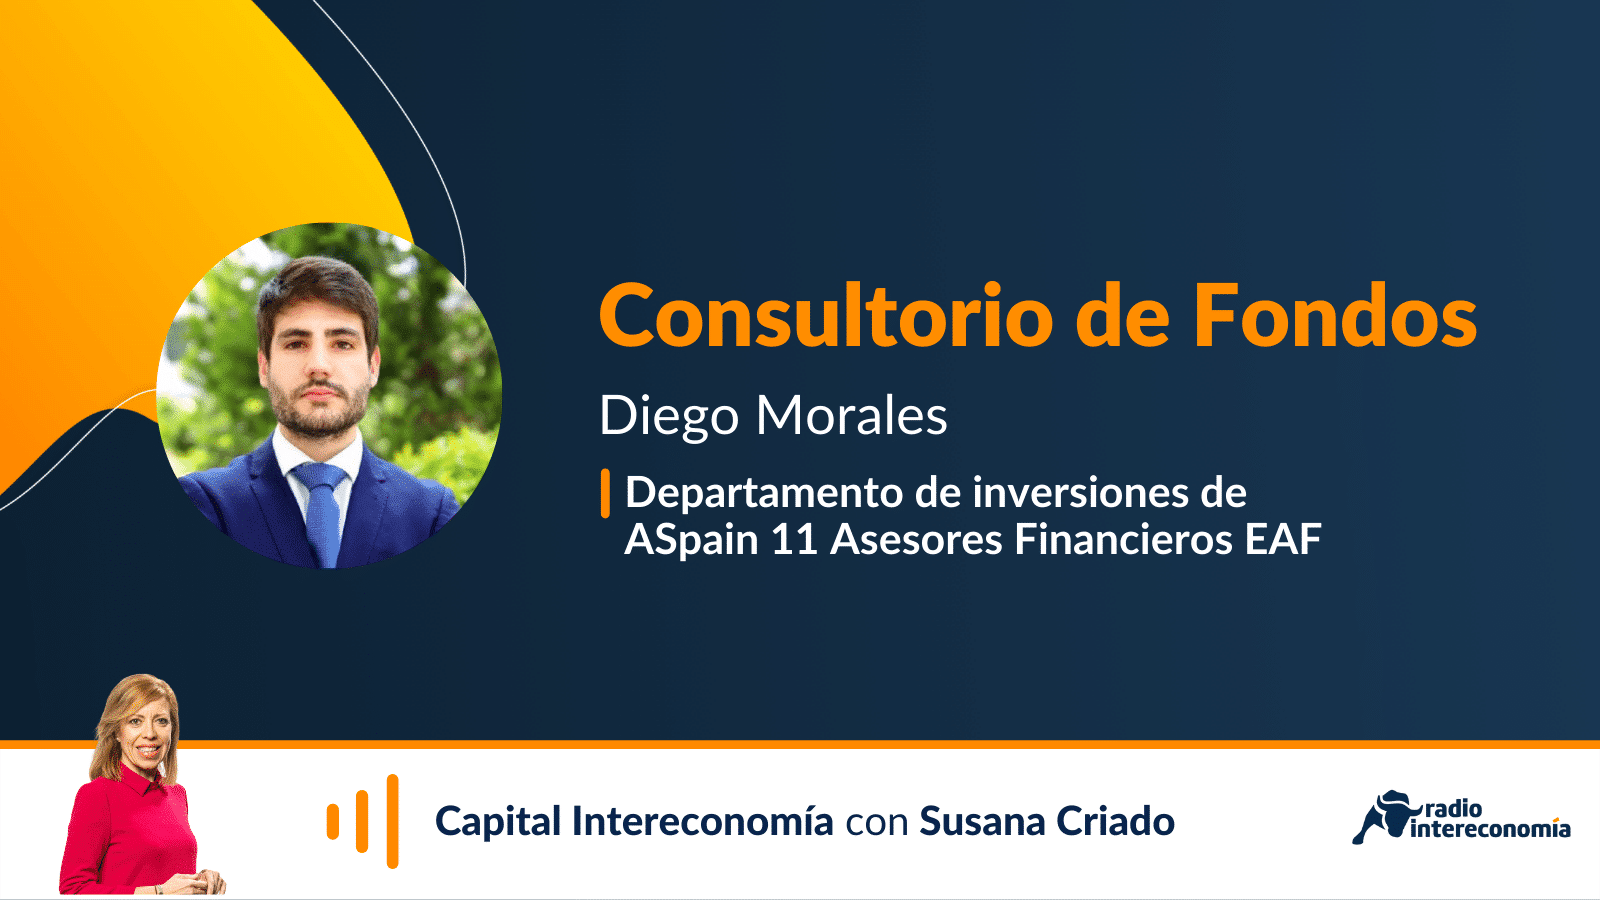 Consultorio de Fondos con Diego Morales (Aspain 11)